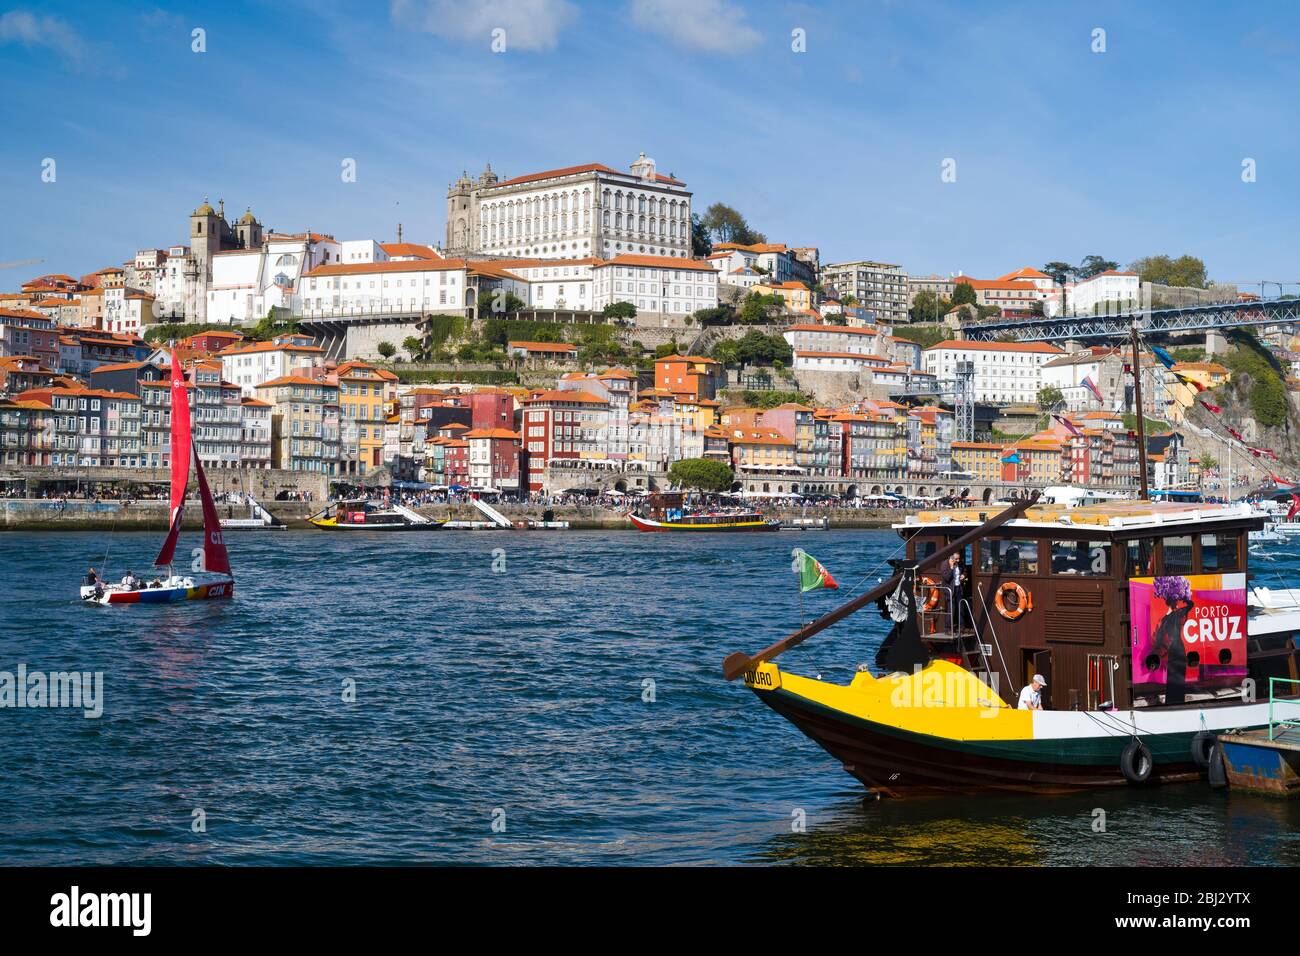 Rabelo Boat - chiatta del vino porto - un'attrazione turistica a V|la Nova de Gaia a Porto, Portogallo Foto Stock